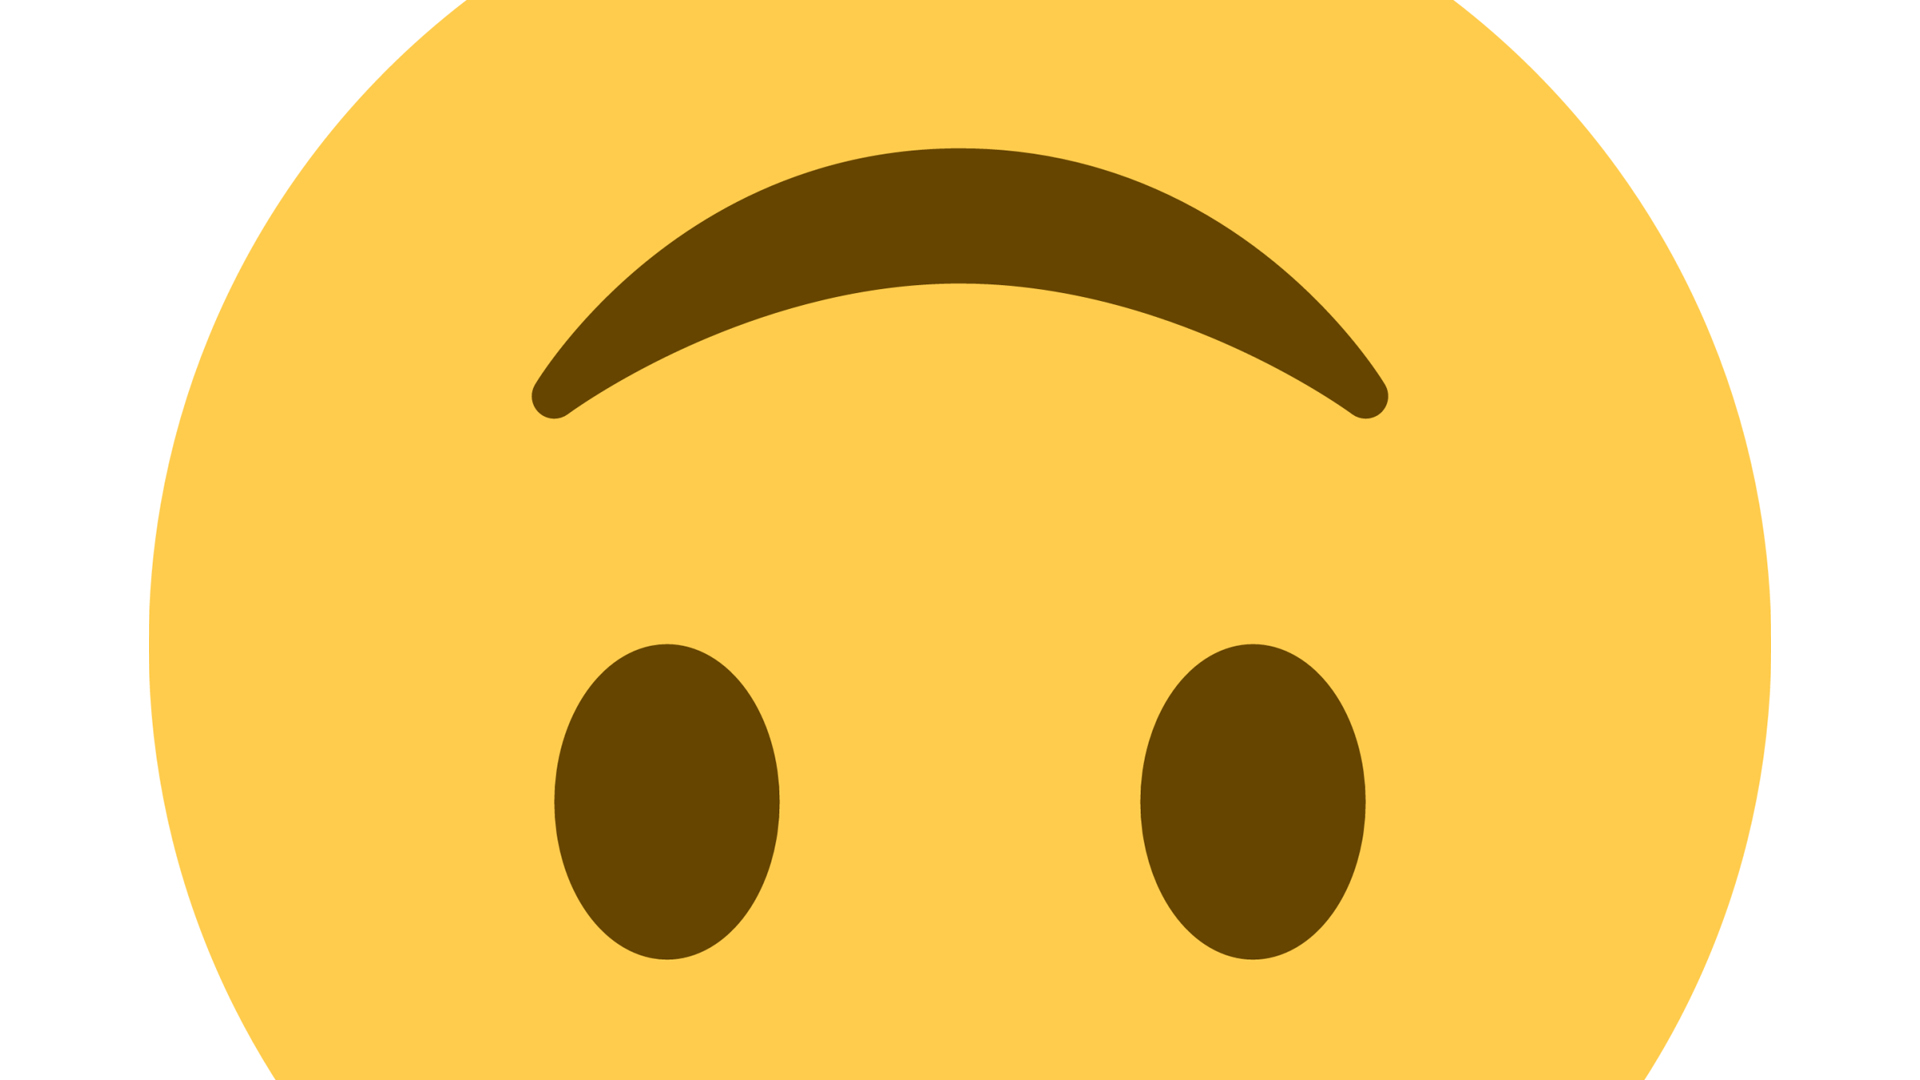 The upside-down emoji in closeup